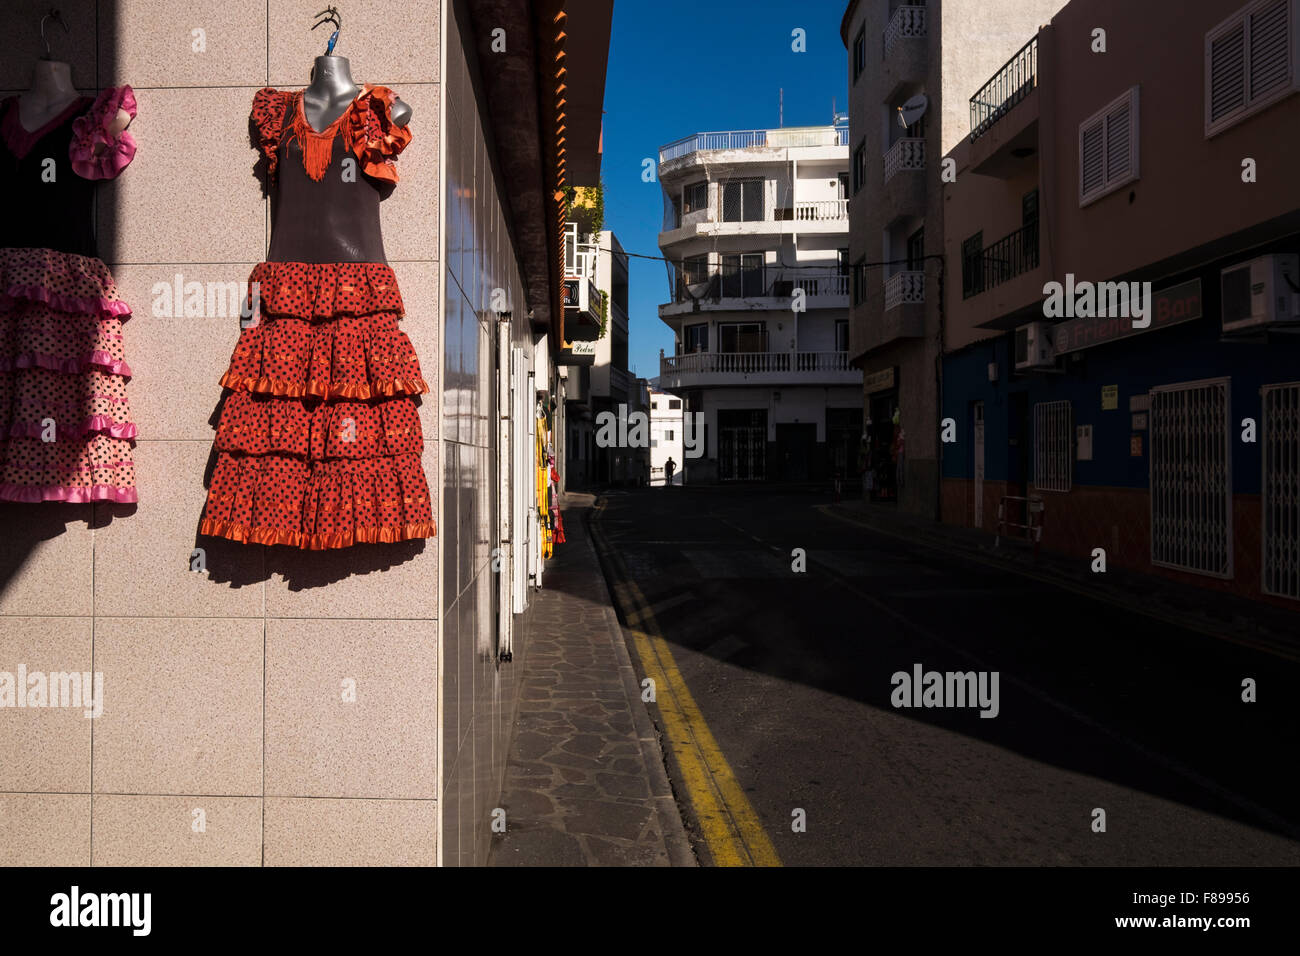 Flamenco-Kleid hängen vor ein Tourist Souvenir-Shop in den Seitenstraßen von Puerto Santiago, Teneriffa, Kanarische Inseln, Spanien. Stockfoto